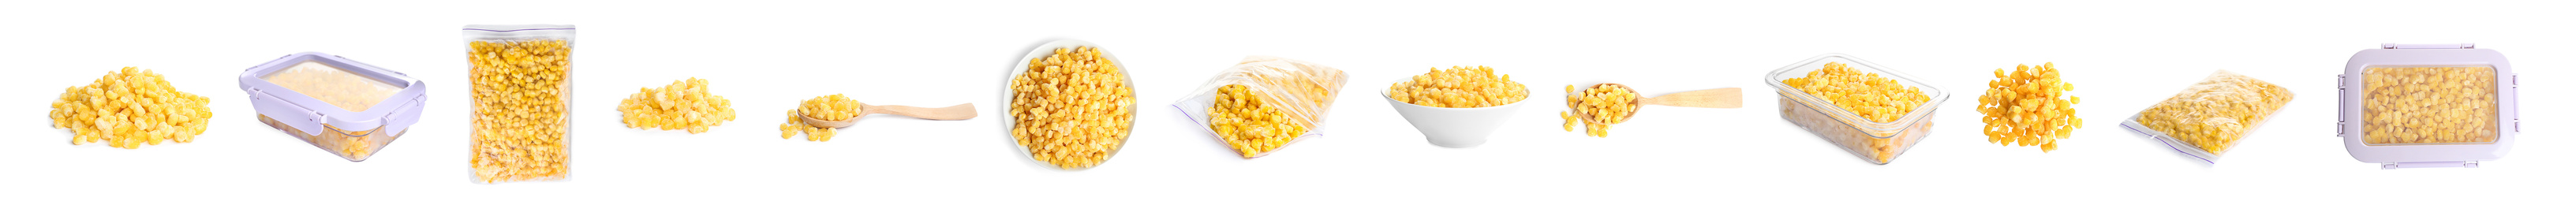 Image of Set of frozen corn kernels on white background. Vegetable preservation